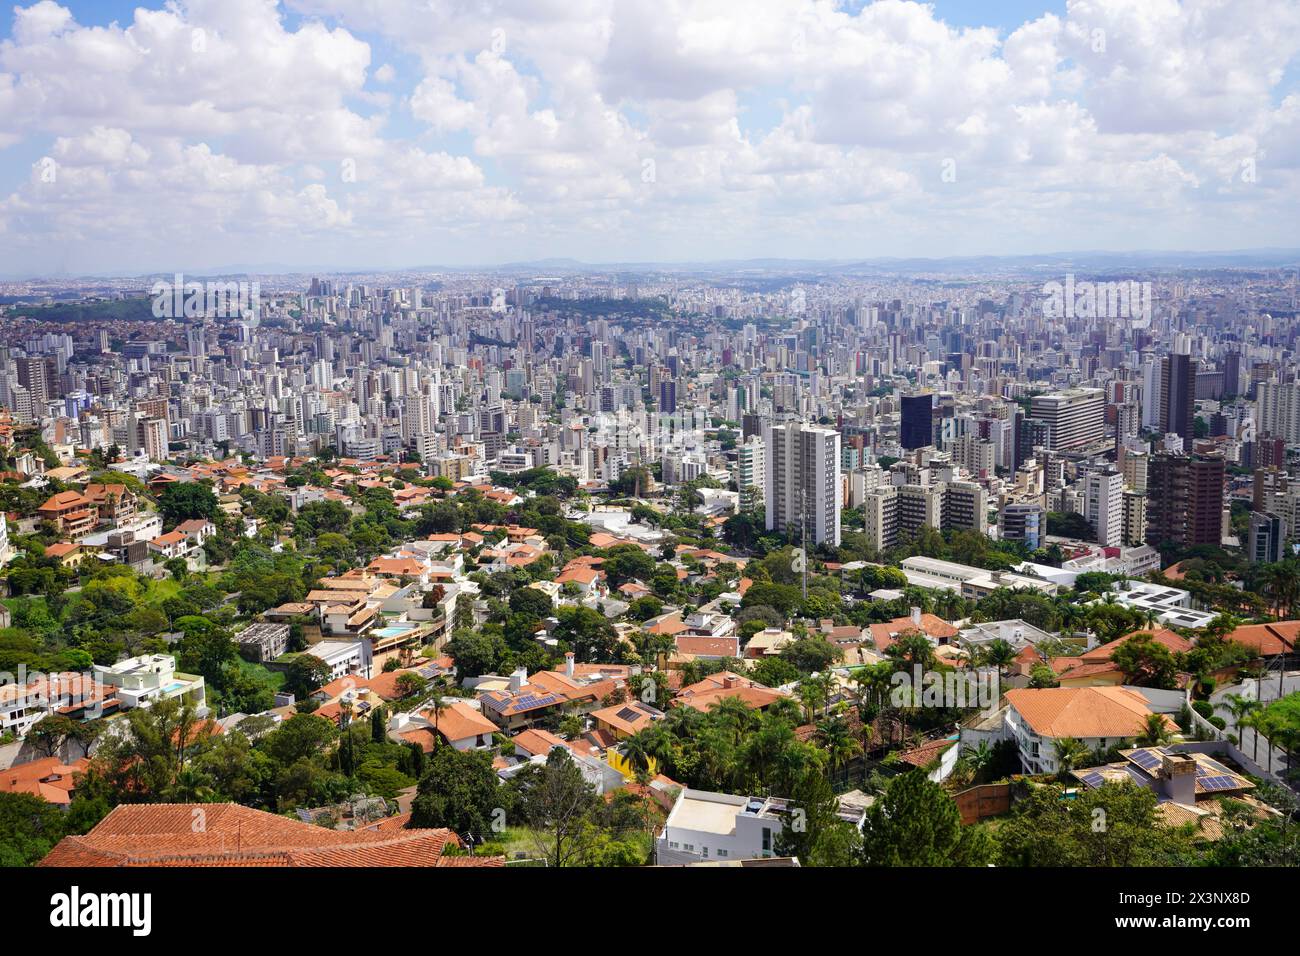 Vista aerea della metropoli di Belo Horizonte nello stato di Minas Gerais, Brasile Foto Stock